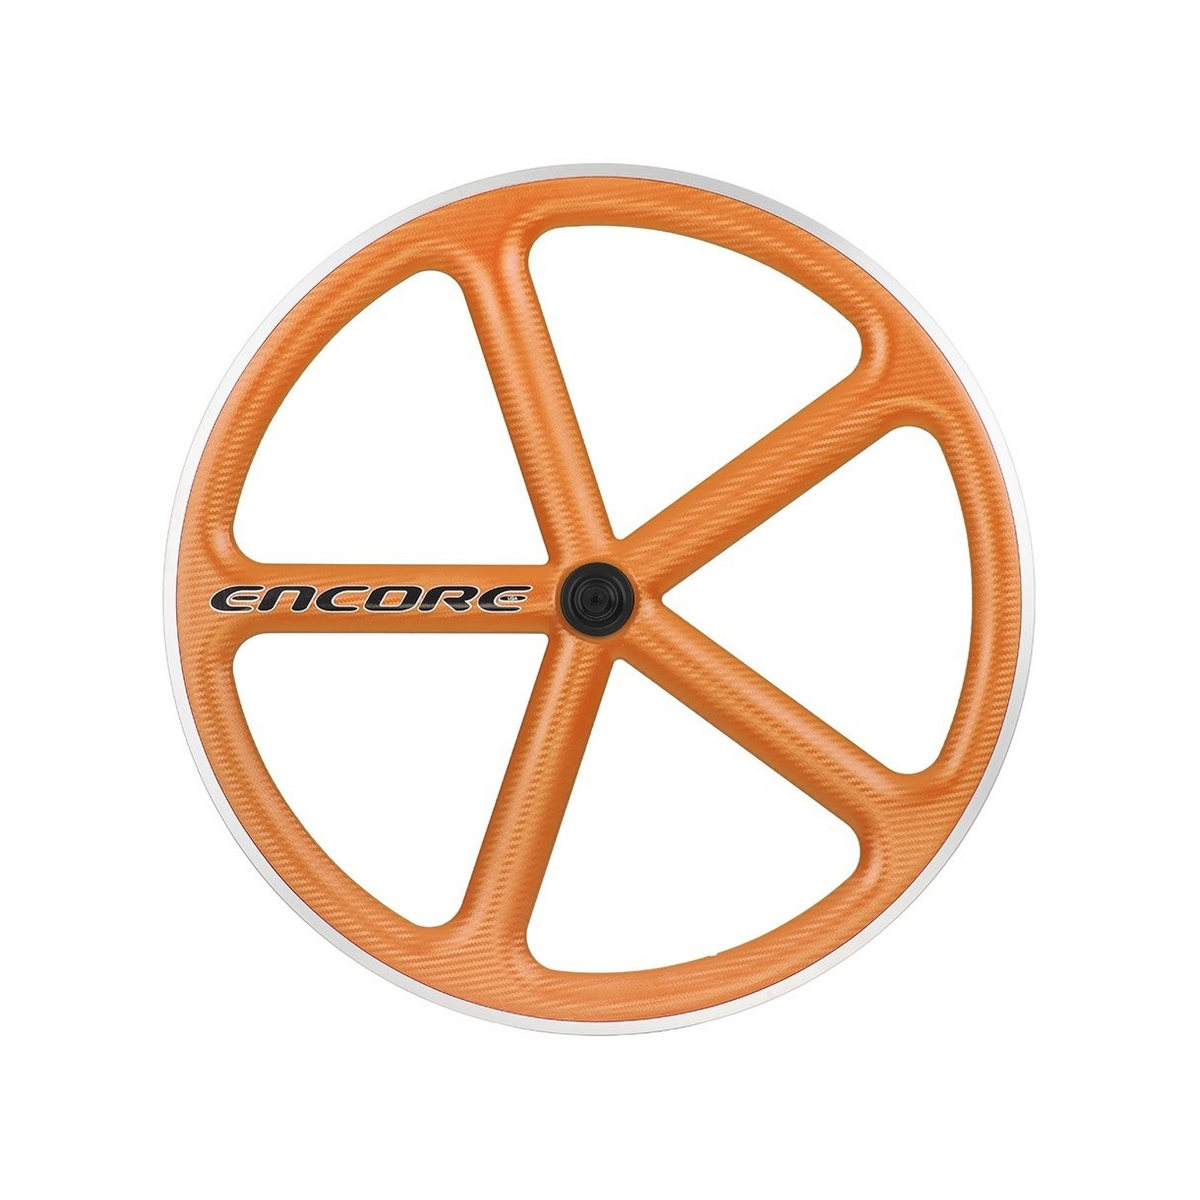 Vorderrad 700c Track 5 Speichen Carbon Geflecht orange msw